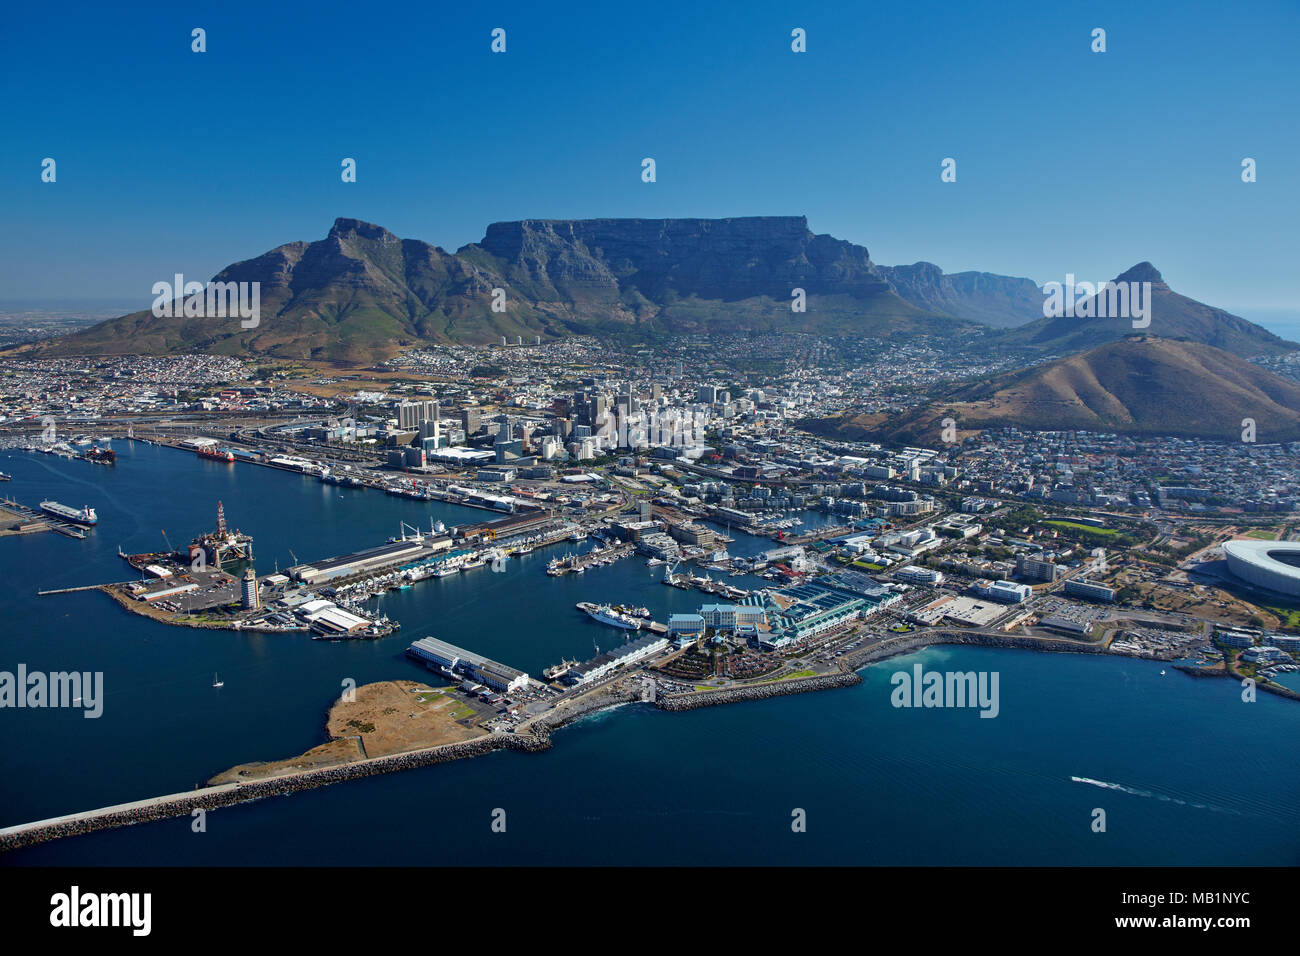 Port de Cape Town, V & A Waterfront, CBD, et Table Mountain, Cape Town, Afrique du Sud - vue aérienne Banque D'Images